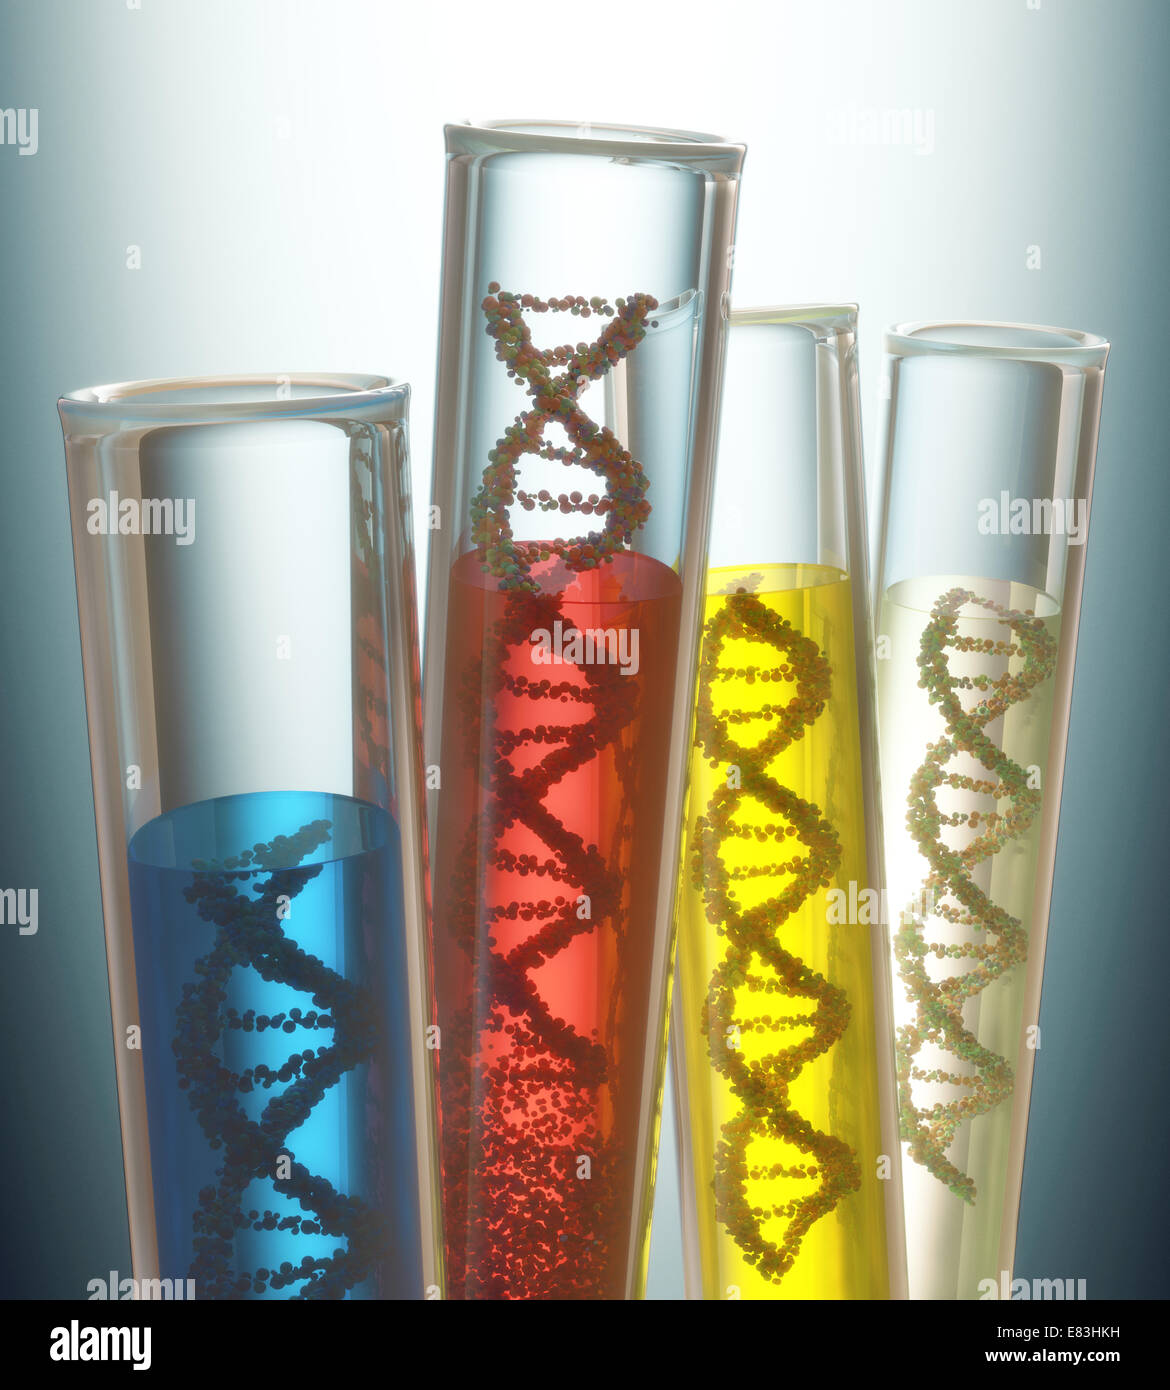 Tubo de ensayo con el ADN en el interior. Concepto de manipulación del código genético. Trazado de recorte incluido. Foto de stock